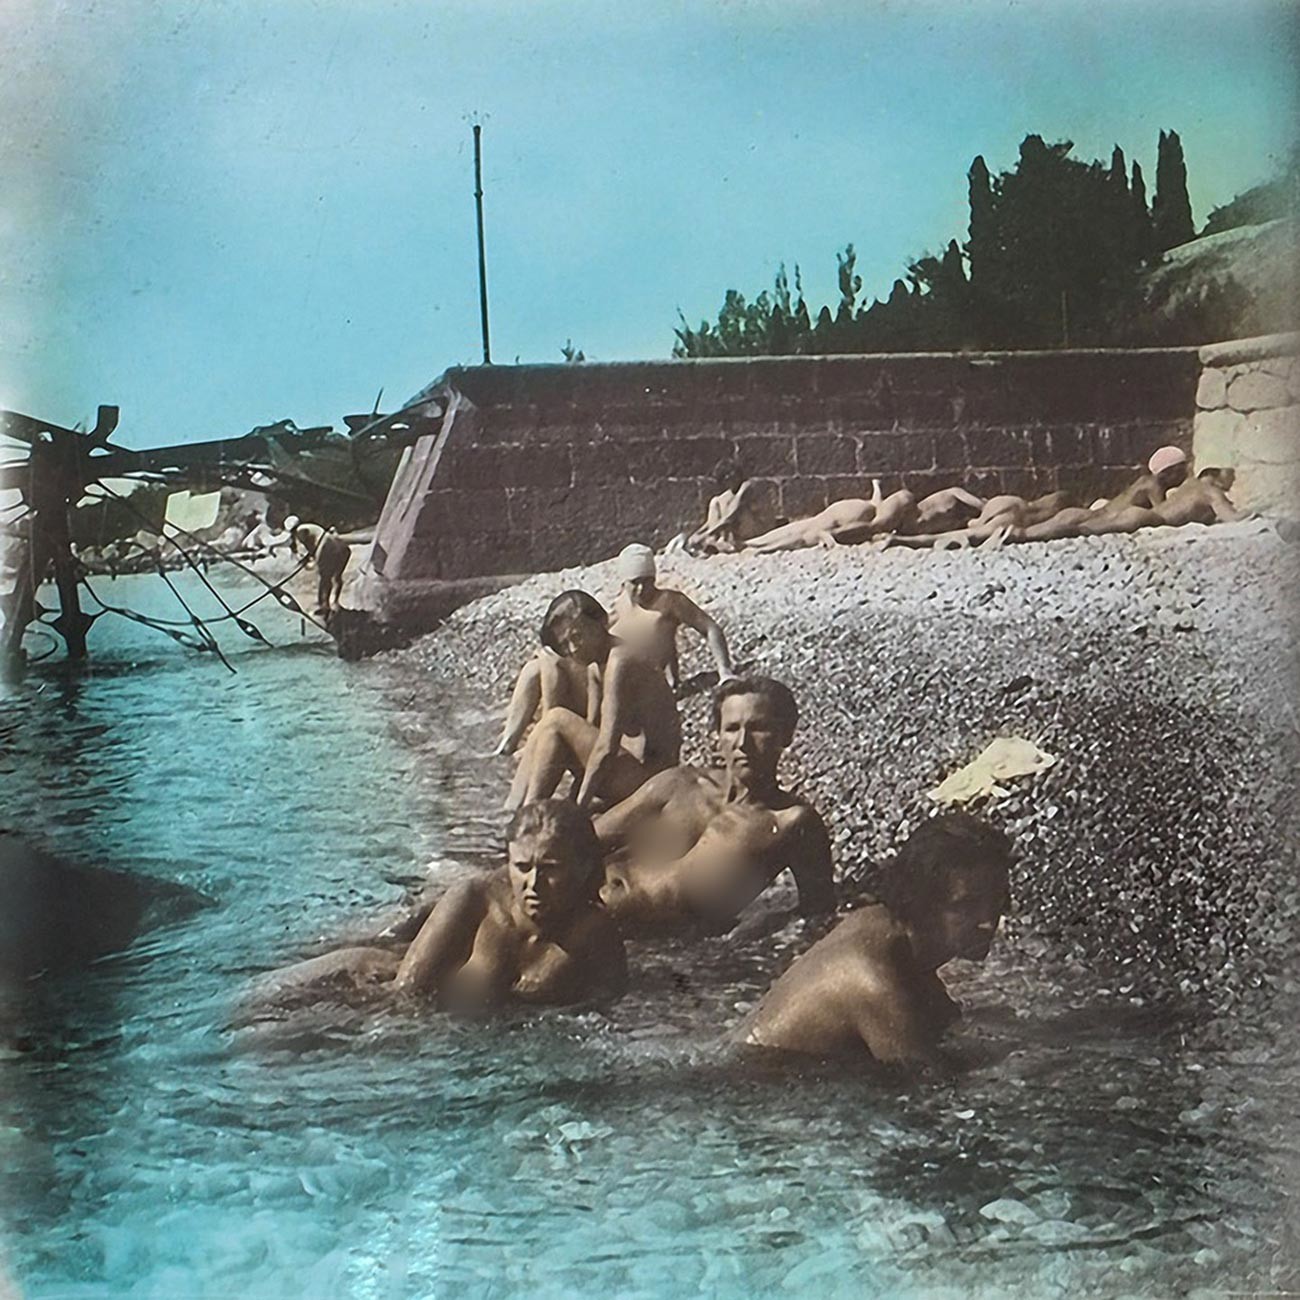 Nackte Arbeiter und Kollektivbauern an einem Strand auf der Krim, 1931.
